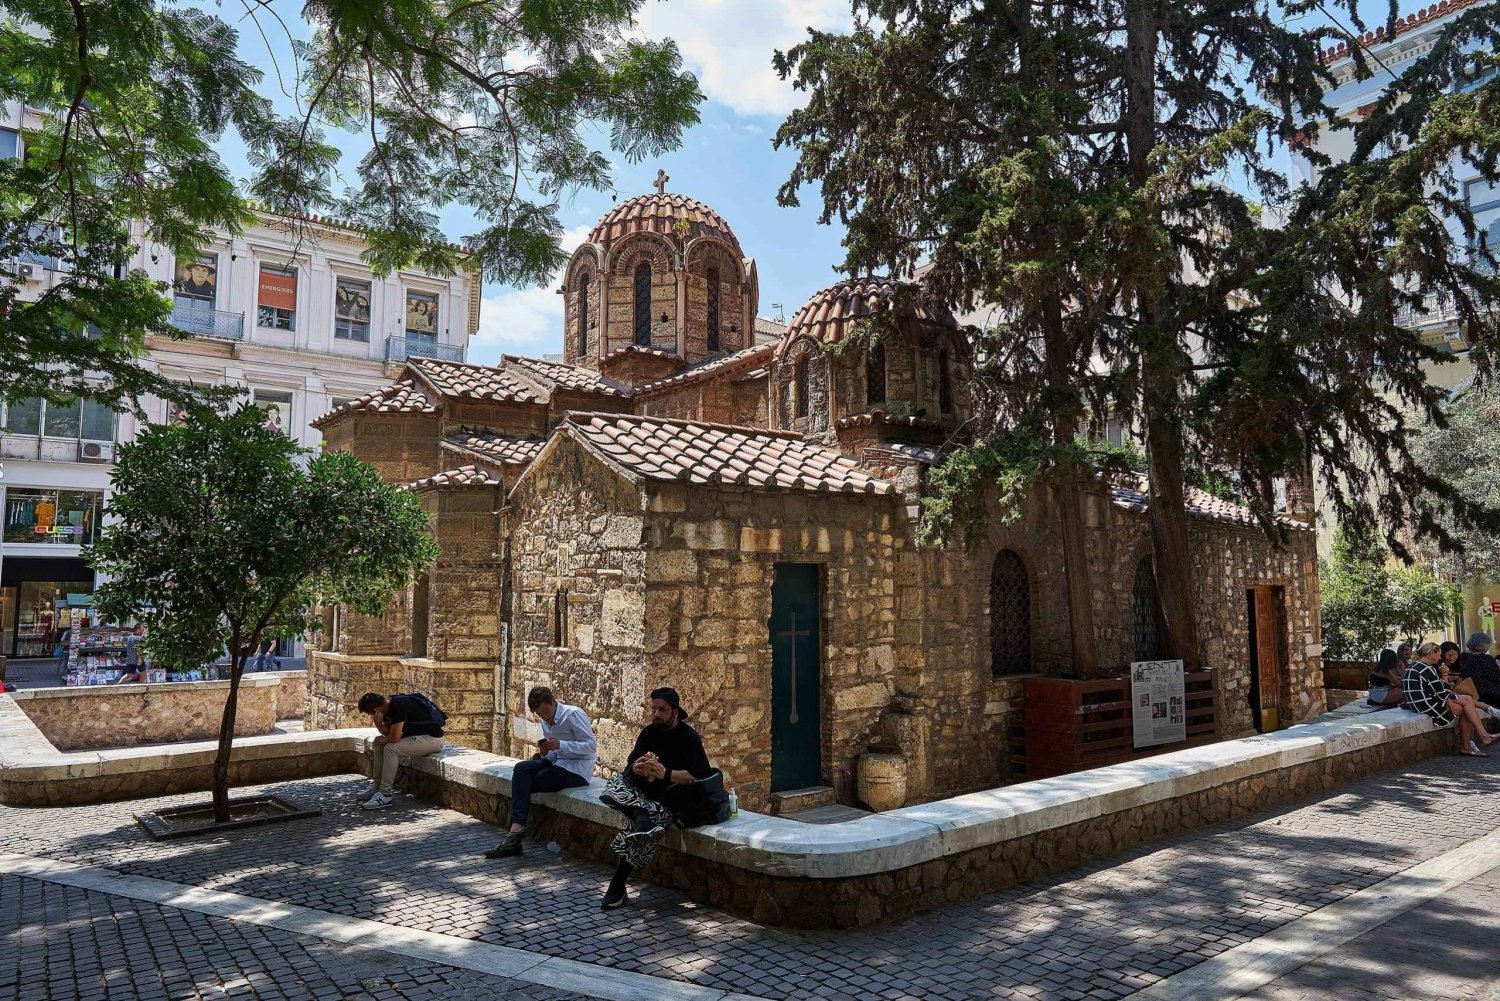 Athen: Eksklusiv, selvguidet audiotur til bysantinske perler